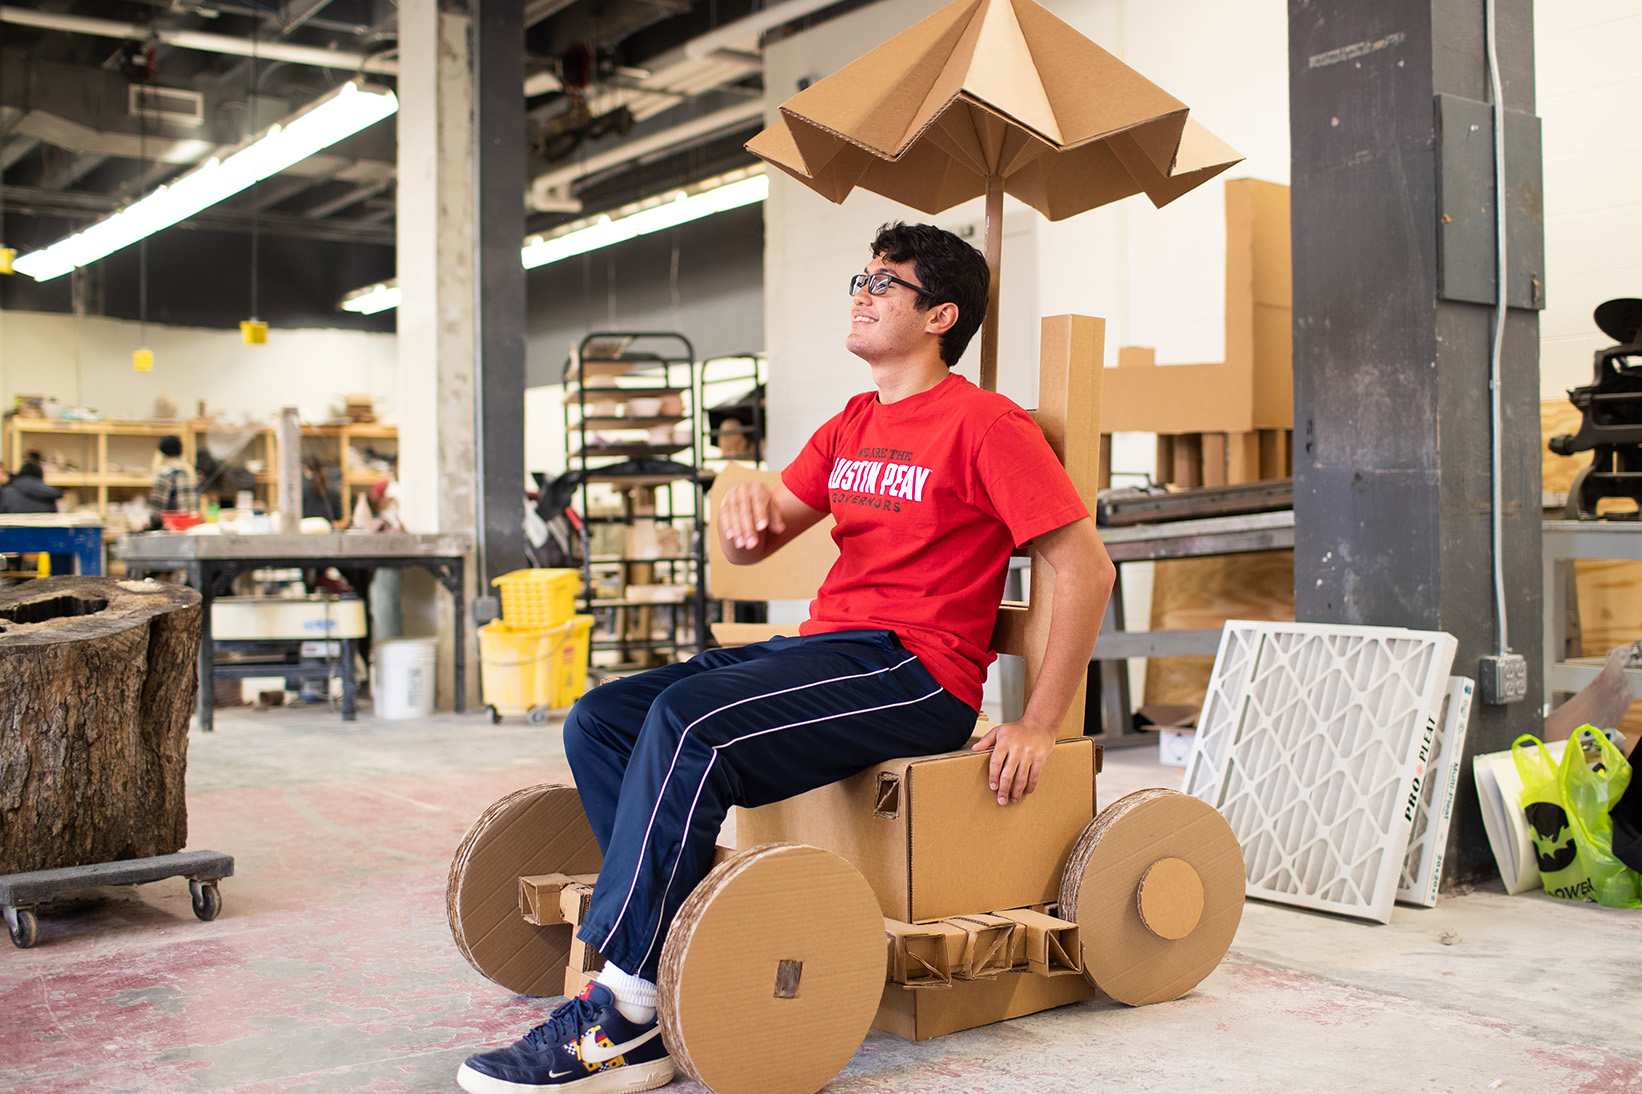 Jeremy Vega poses in cardboard bicycle